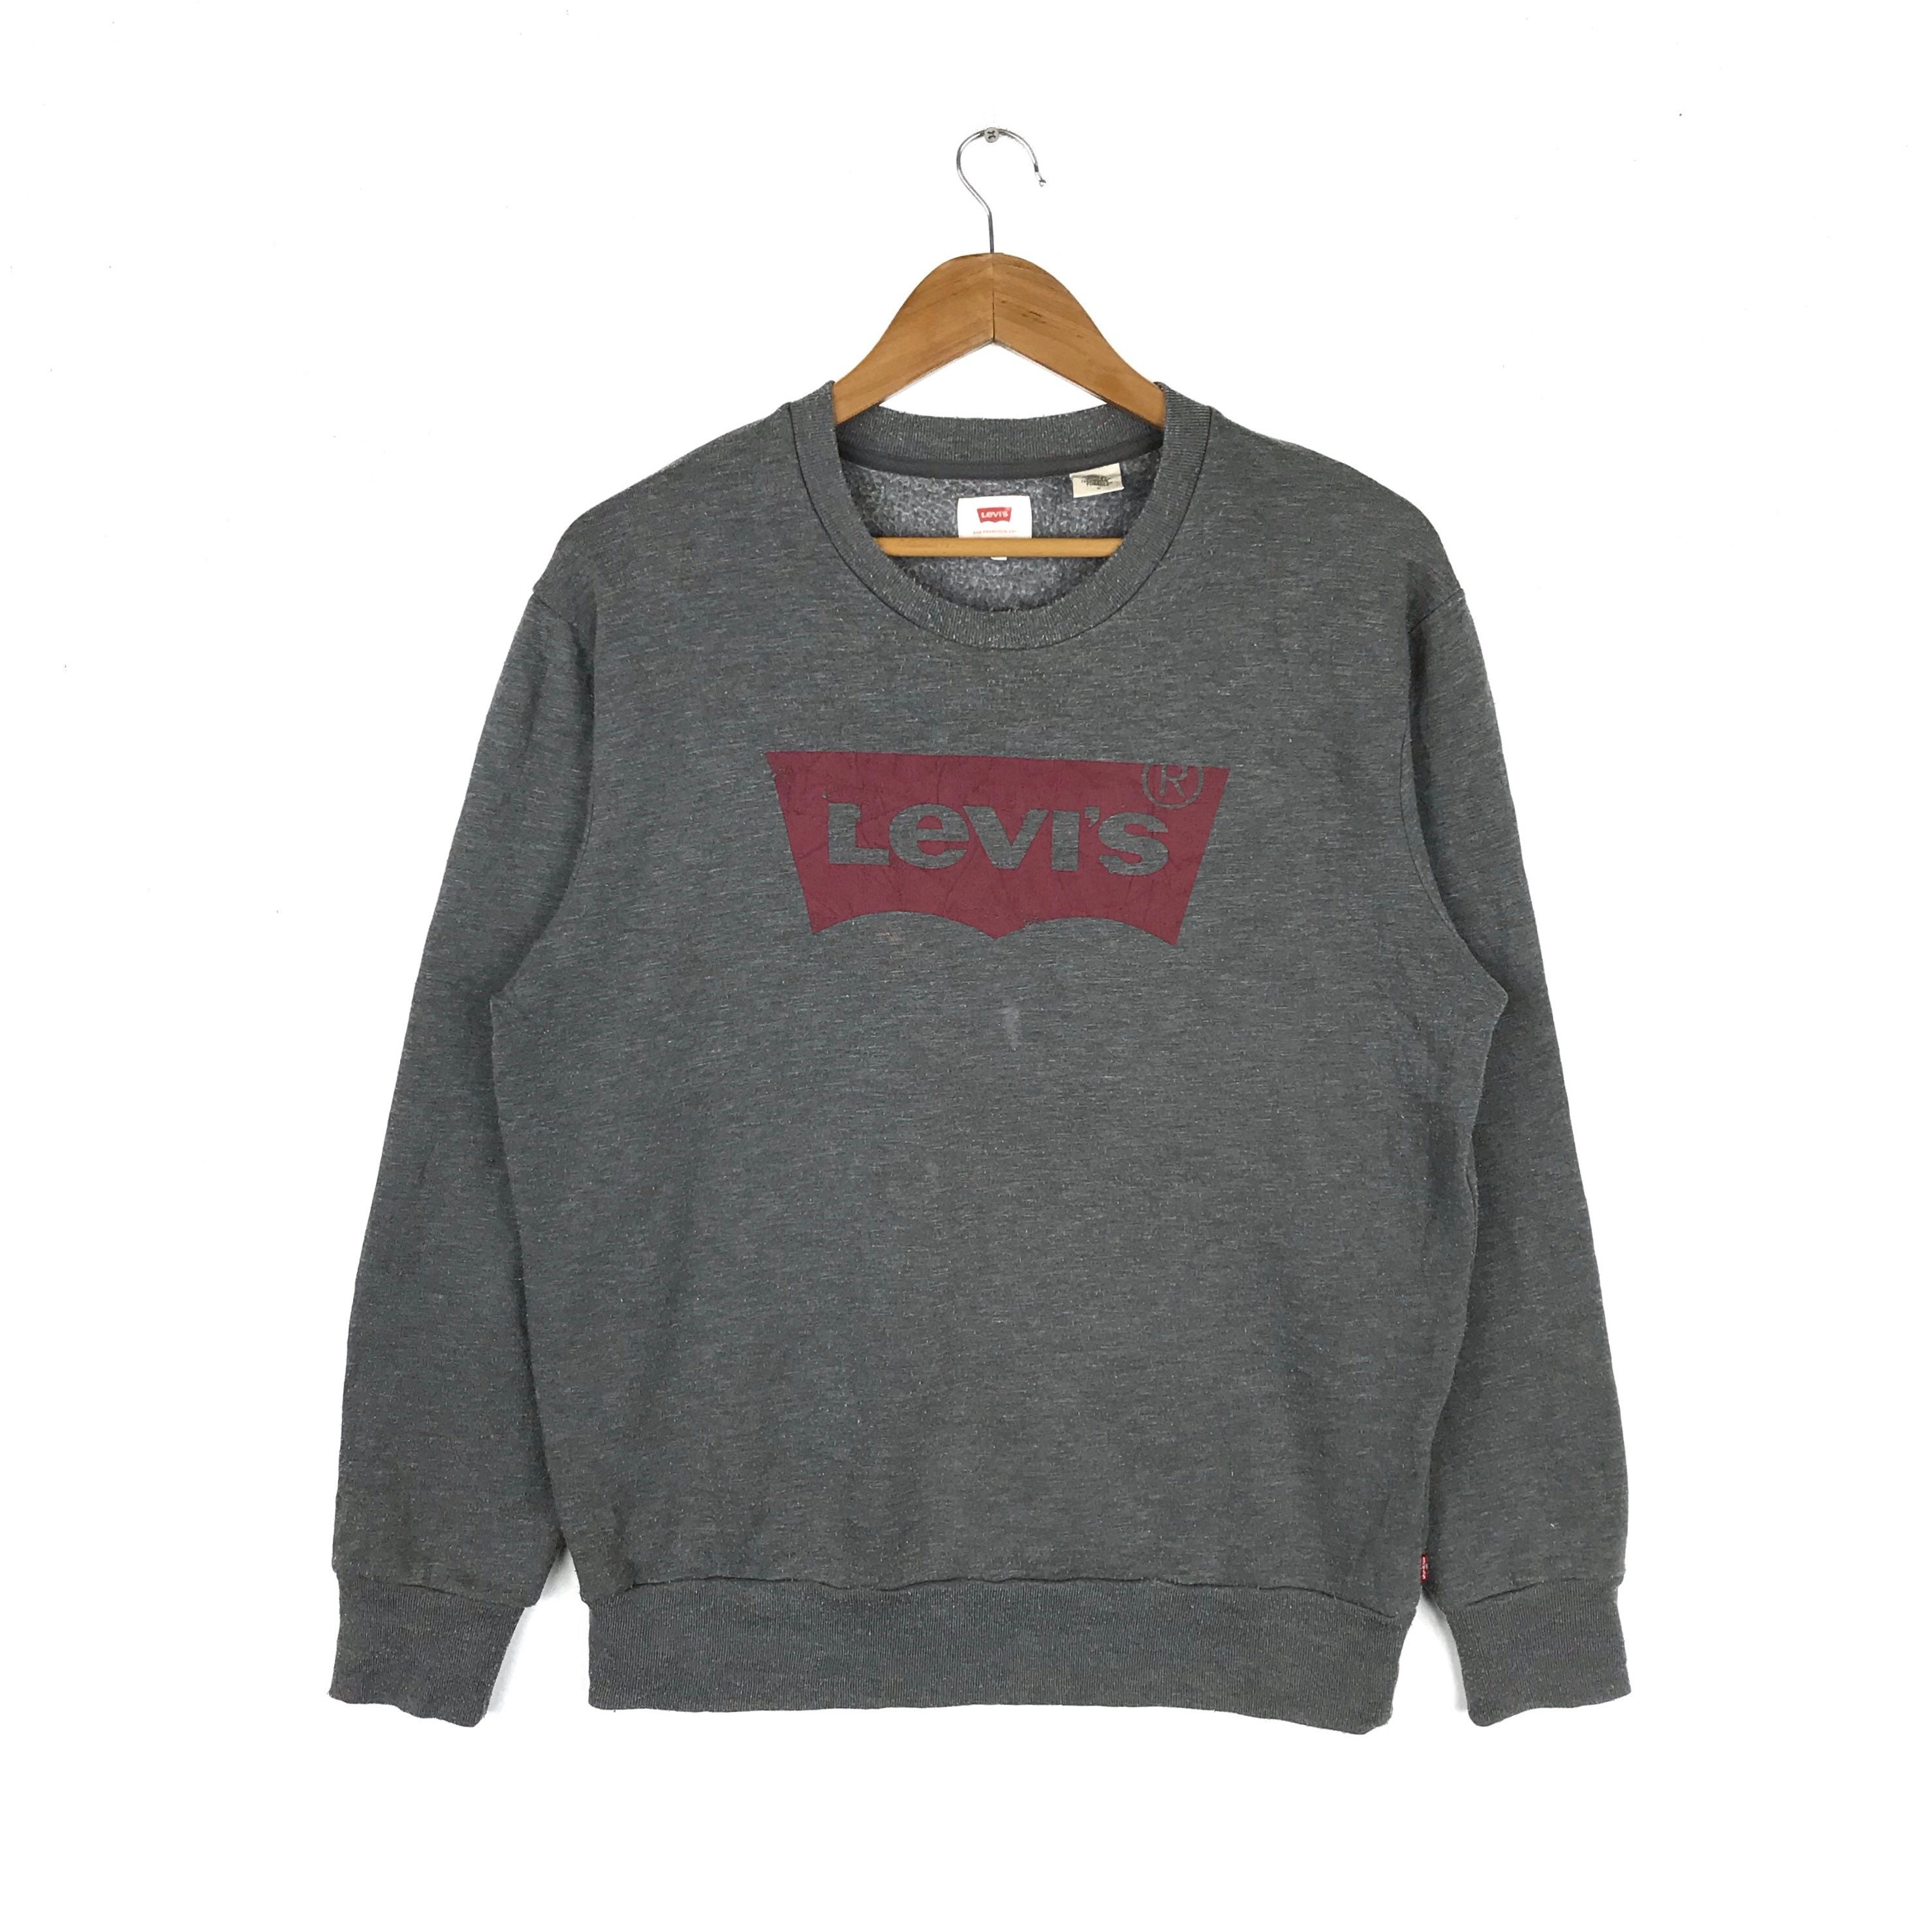 LEVI'S San Francisco Sweatshirt Grey Color Medium Size | Etsy